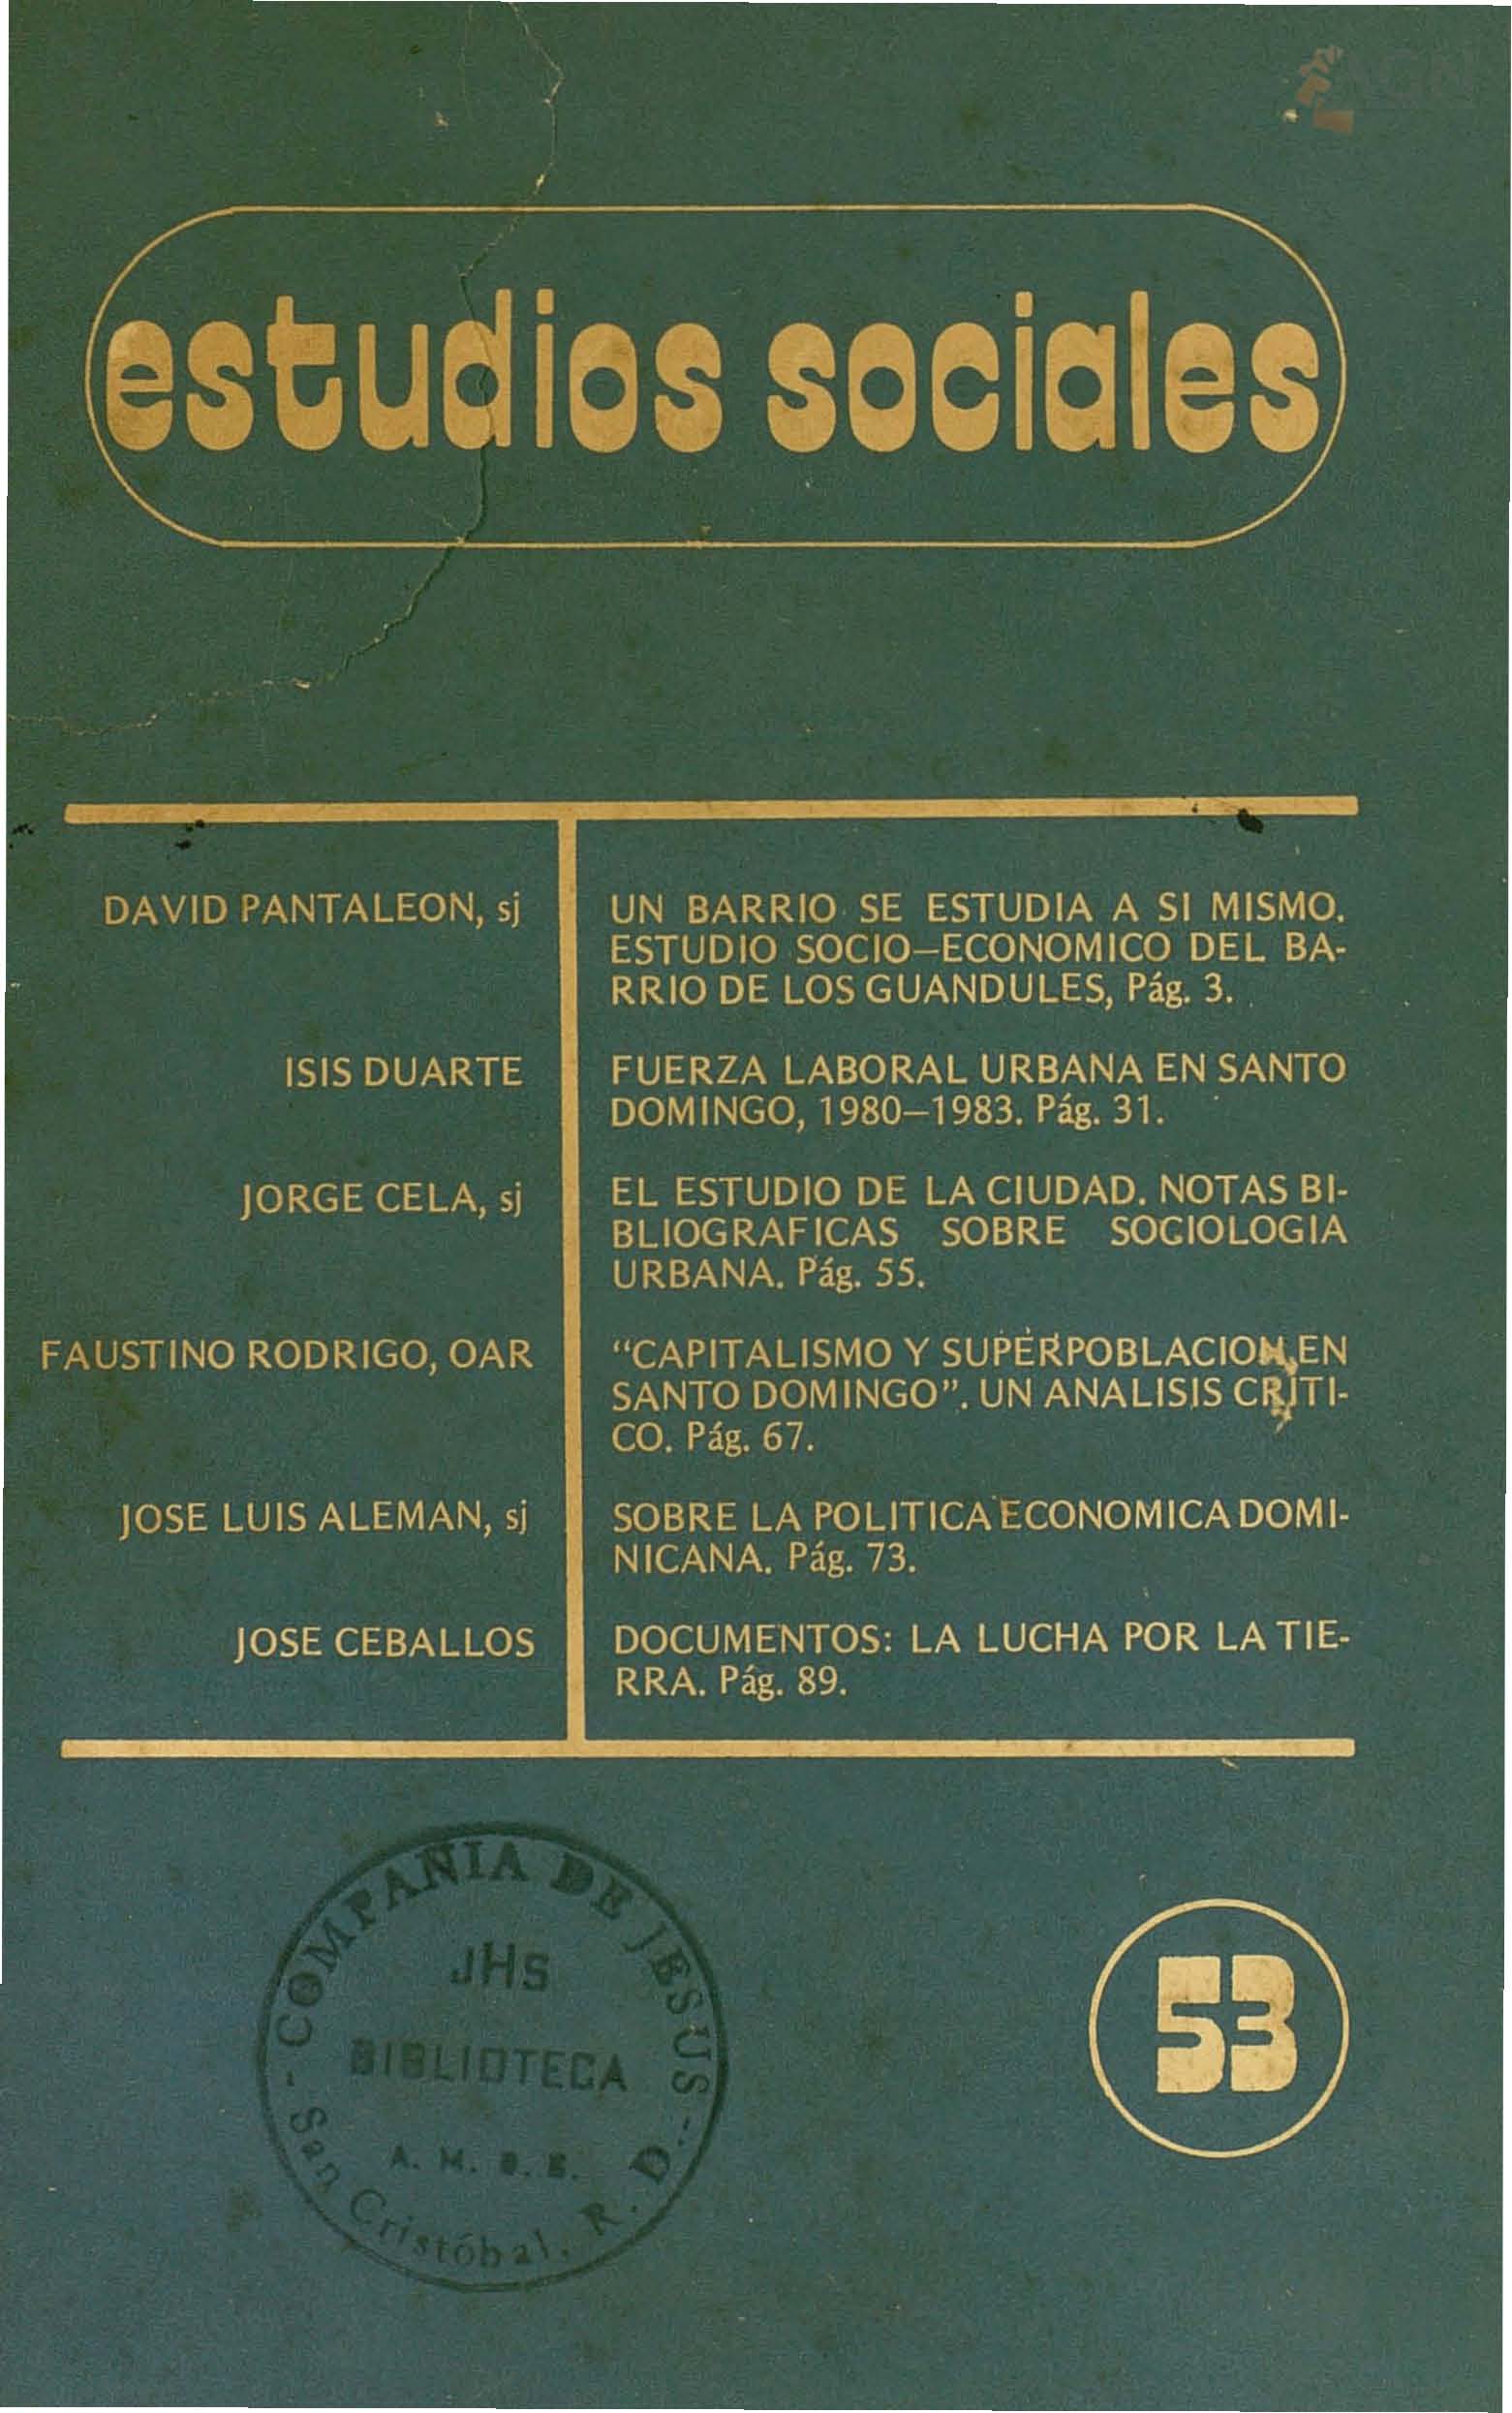 						Ver Vol. 16 Núm. 53 (1983): Sociología Urbana Dominicana
					